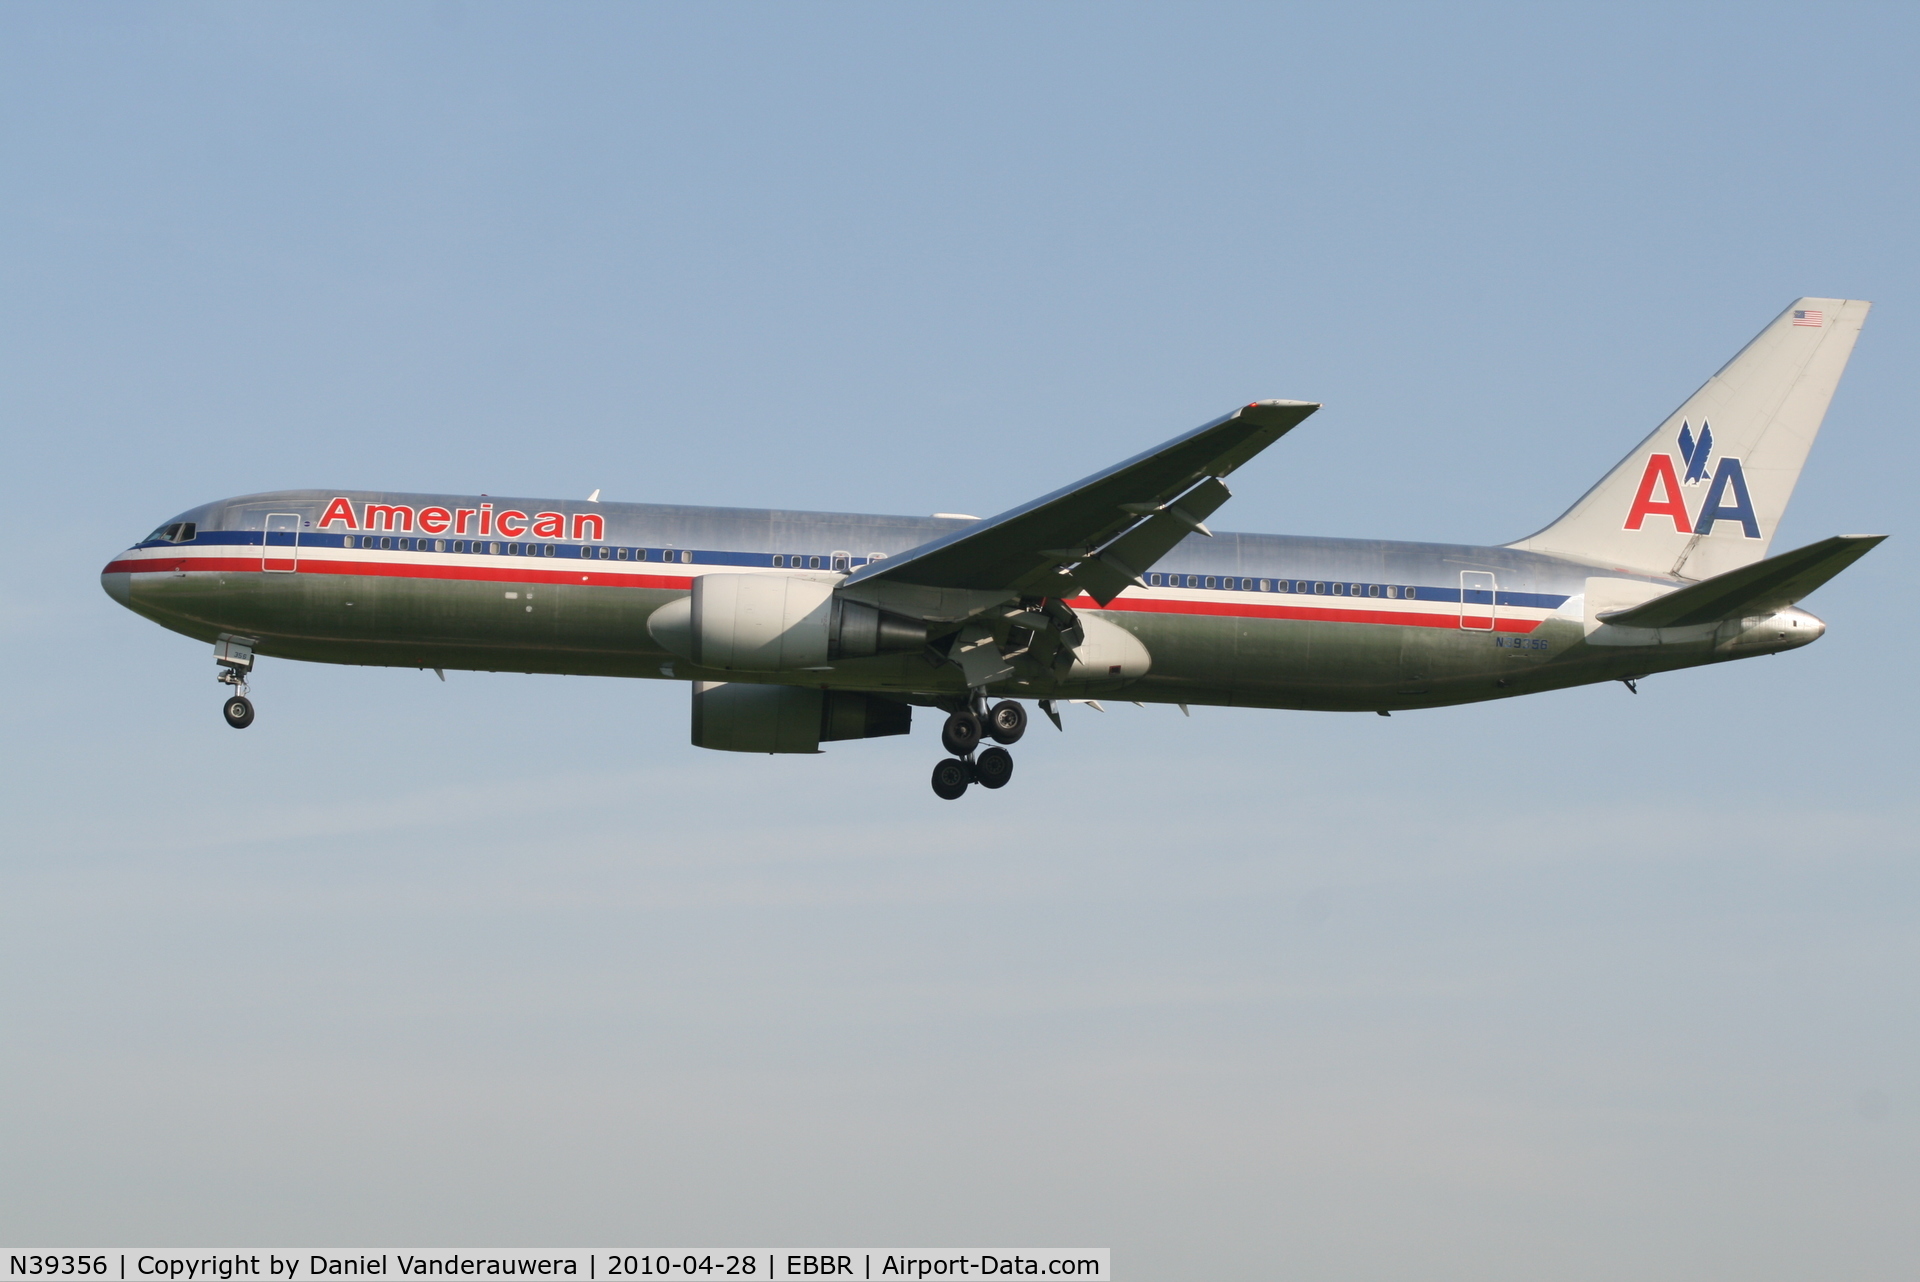 N39356, 1988 Boeing 767-323 C/N 24037, Arrival of flight AA088 to RWY 25L